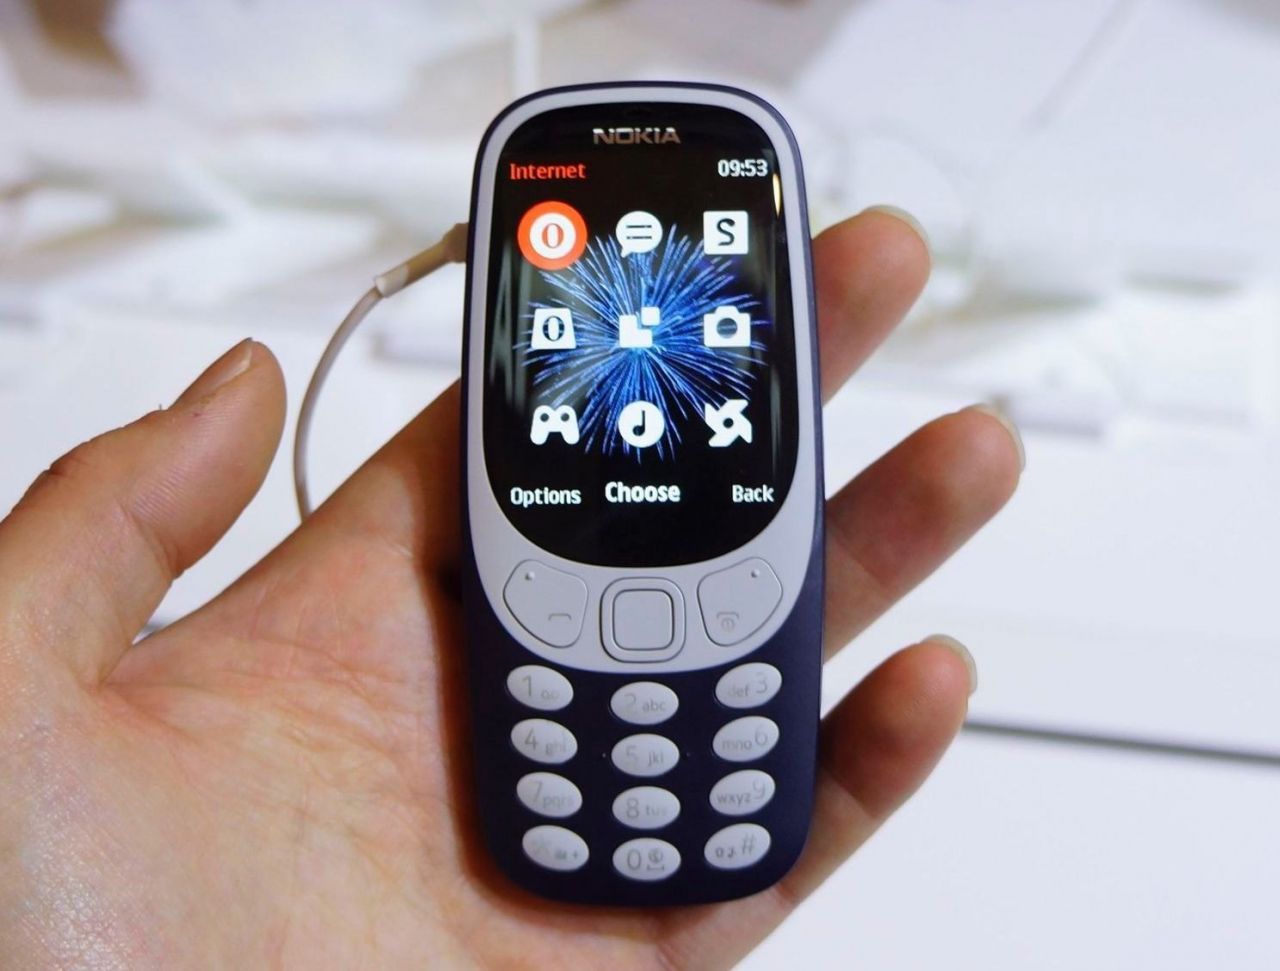 Le Nokia 3310 sera disponible dès la semaine prochaine #3